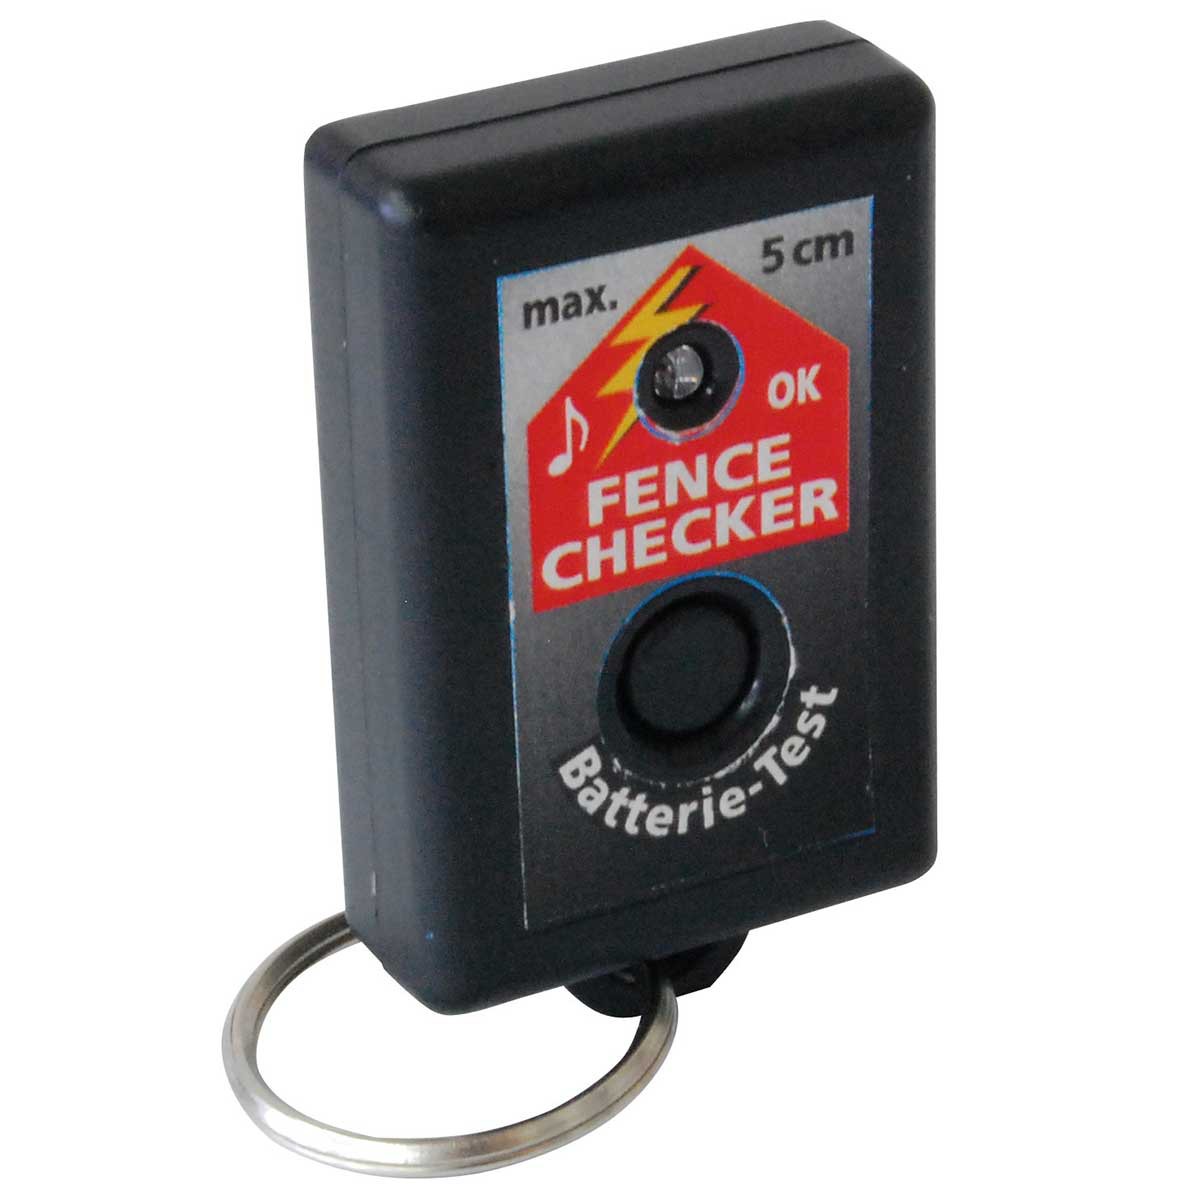 Tester ottico e acustico per recinto elettrico Fence Checker